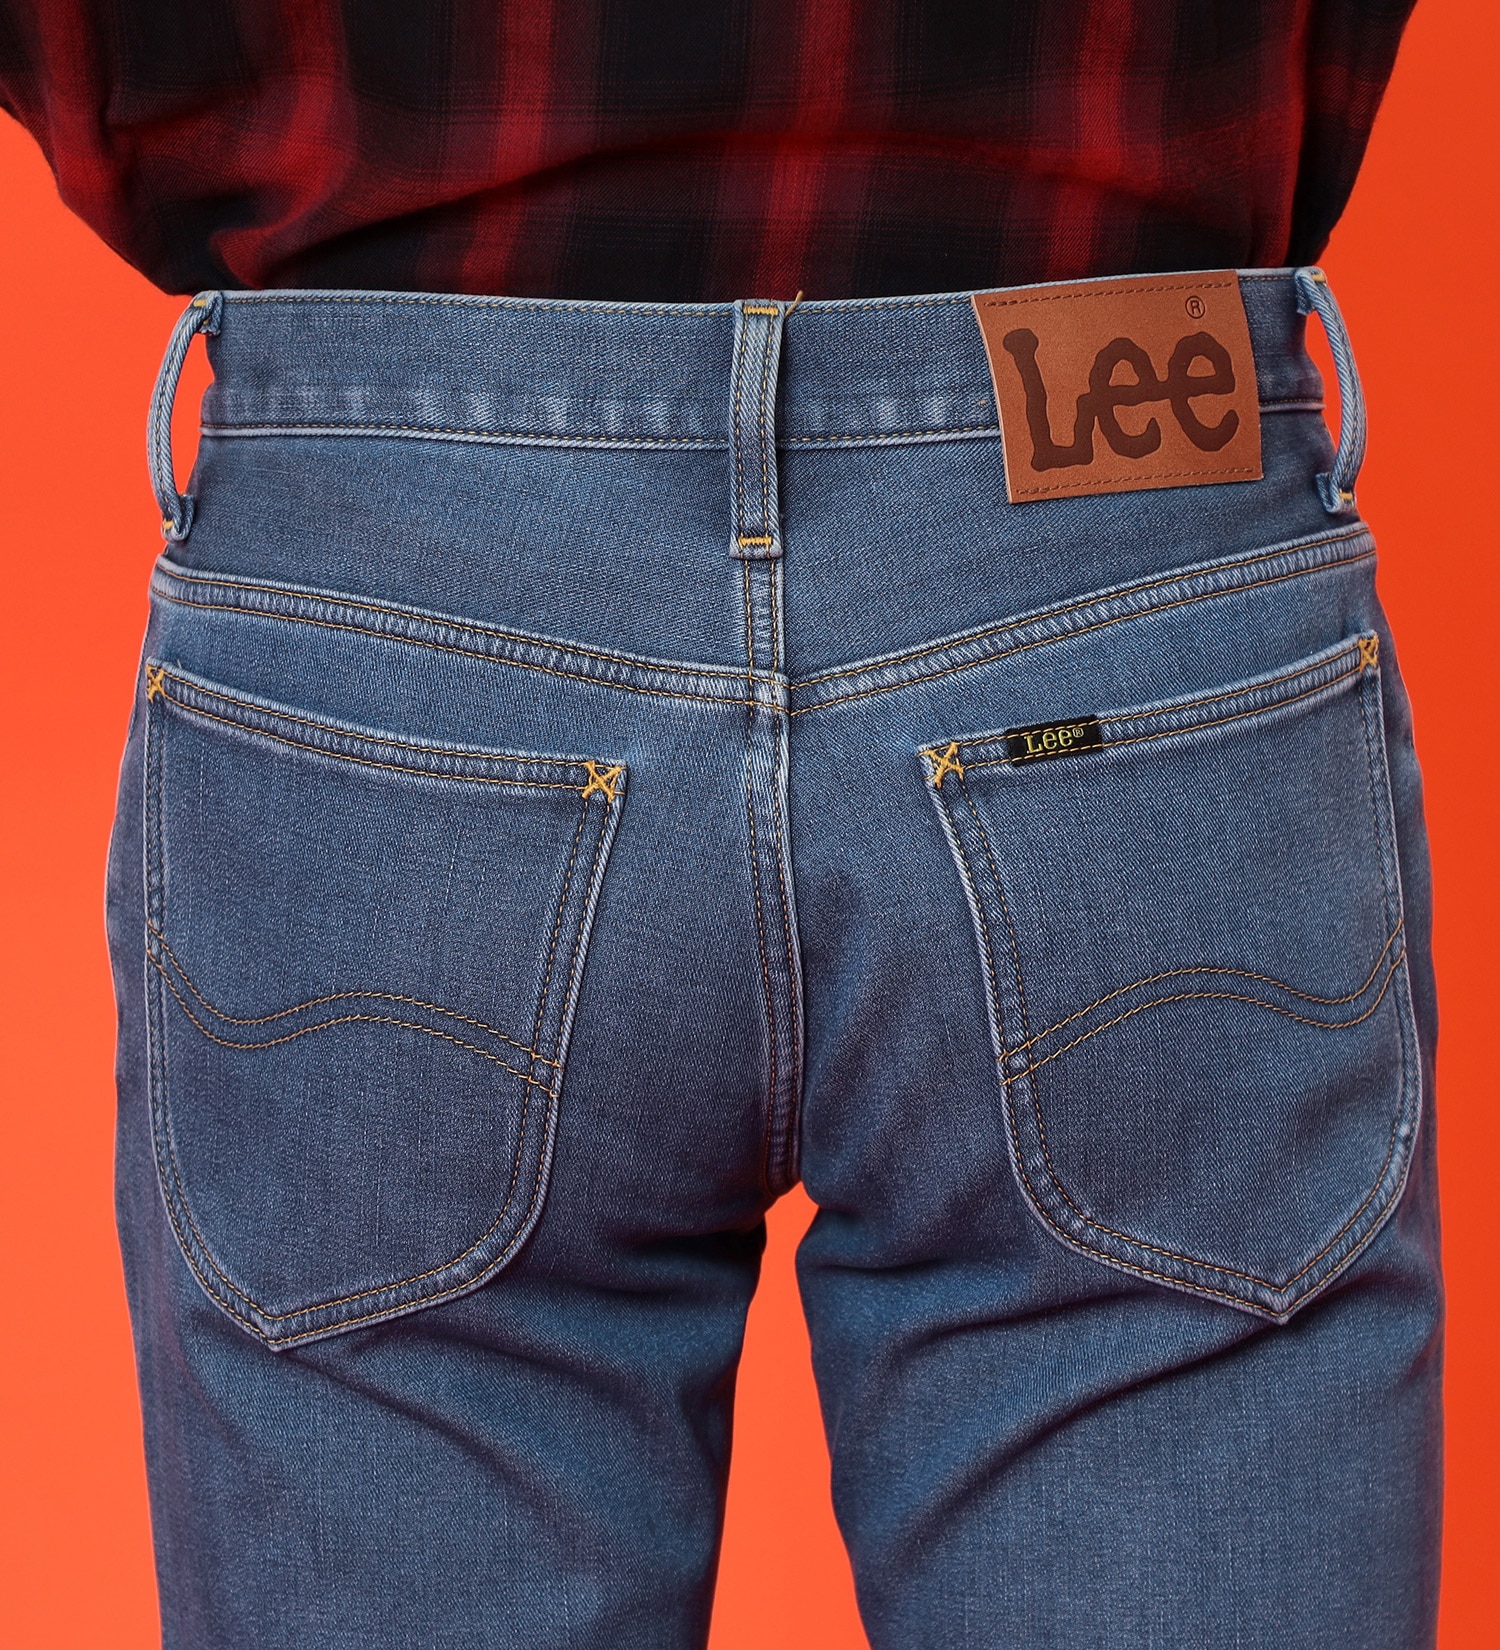 Lee(リー)の【BLACKFRIDAY】【3,000円OFF】【裏起毛】AMERICAN STANDARD 102 ブーツカット【暖】|パンツ/デニムパンツ/メンズ|中色ブルー